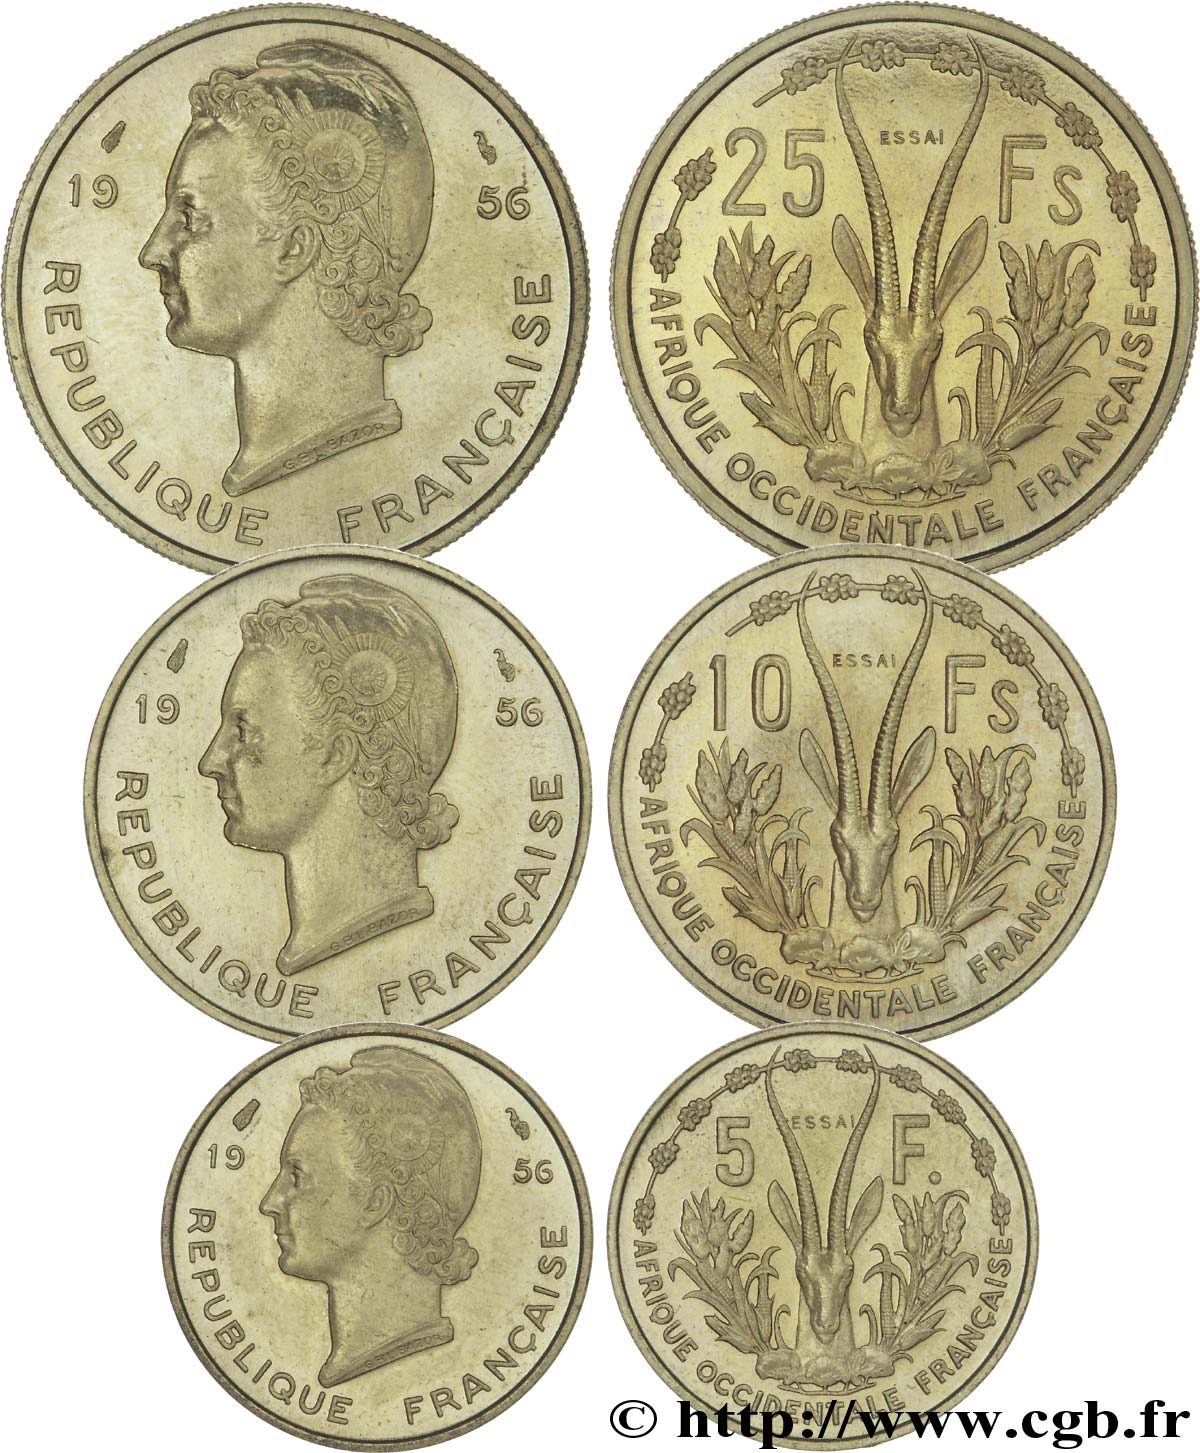 FRENCH WEST AFRICA Boîte de 5, 10 et 25 francs ESSAI 1956 Paris MS 